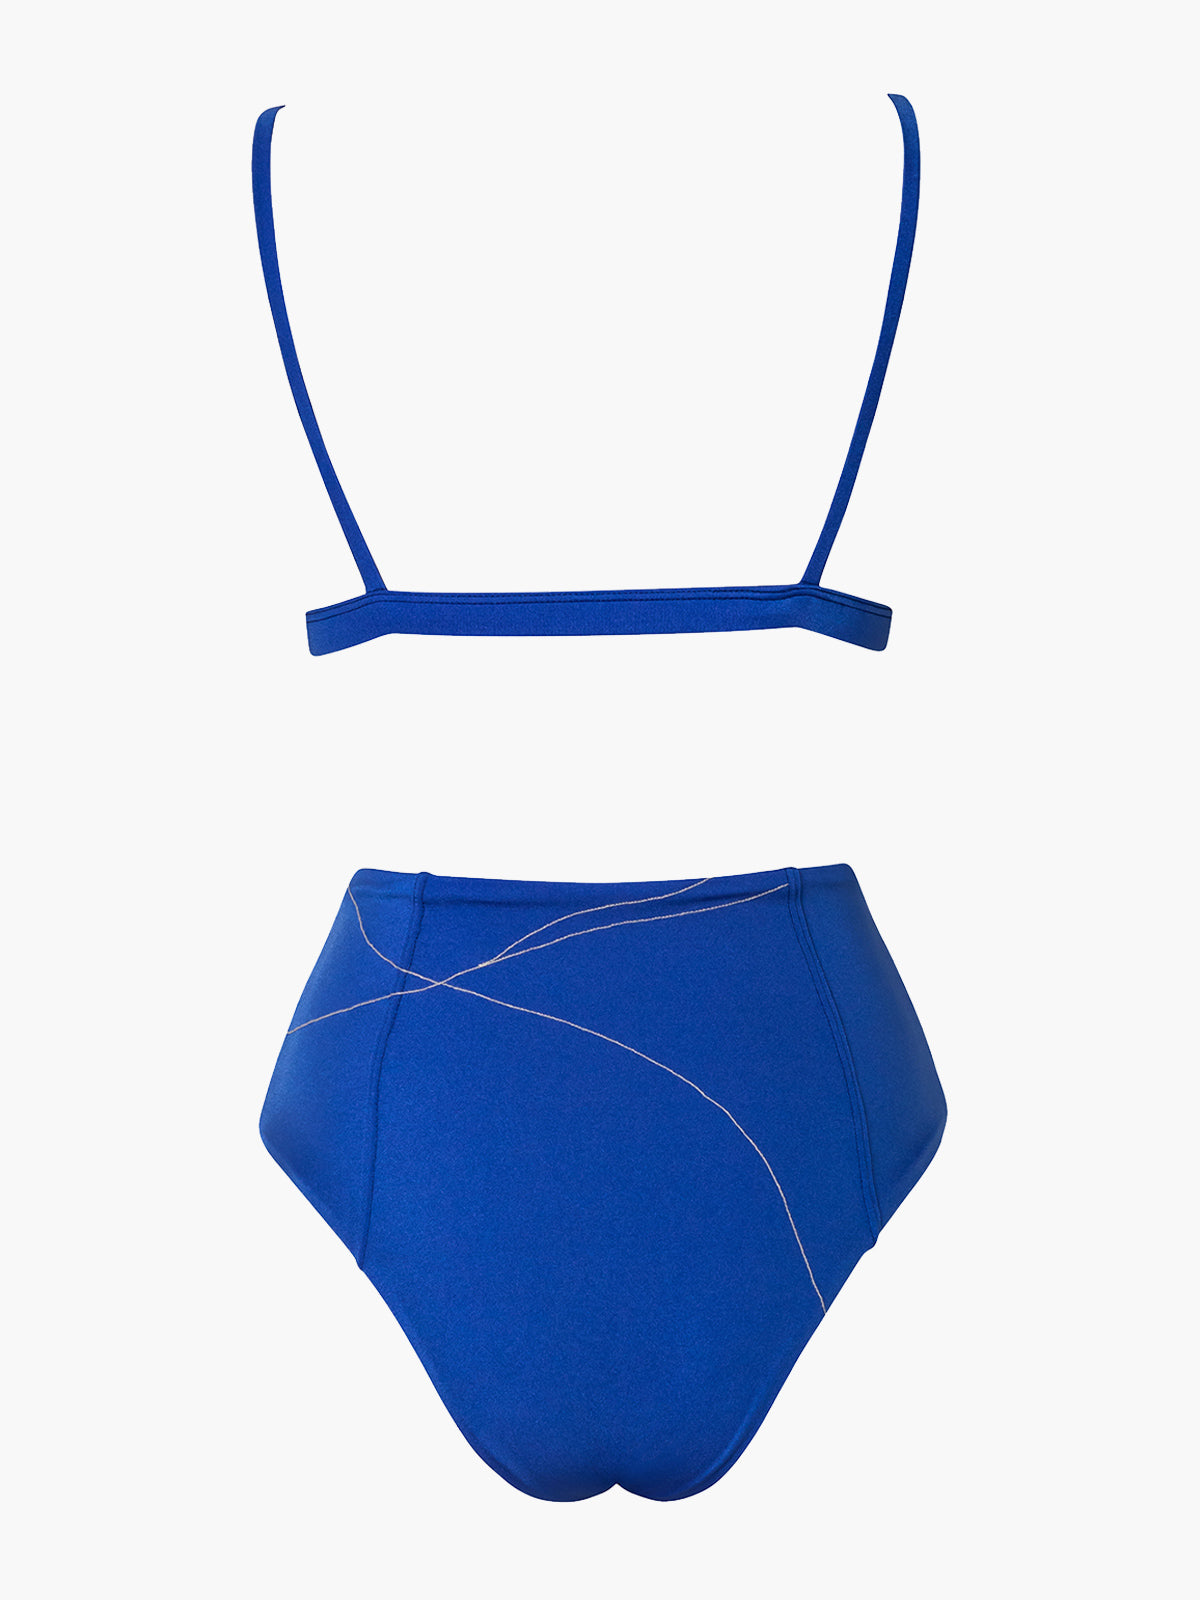 Embroidered Viareggio Bikini Set | Electric Blue